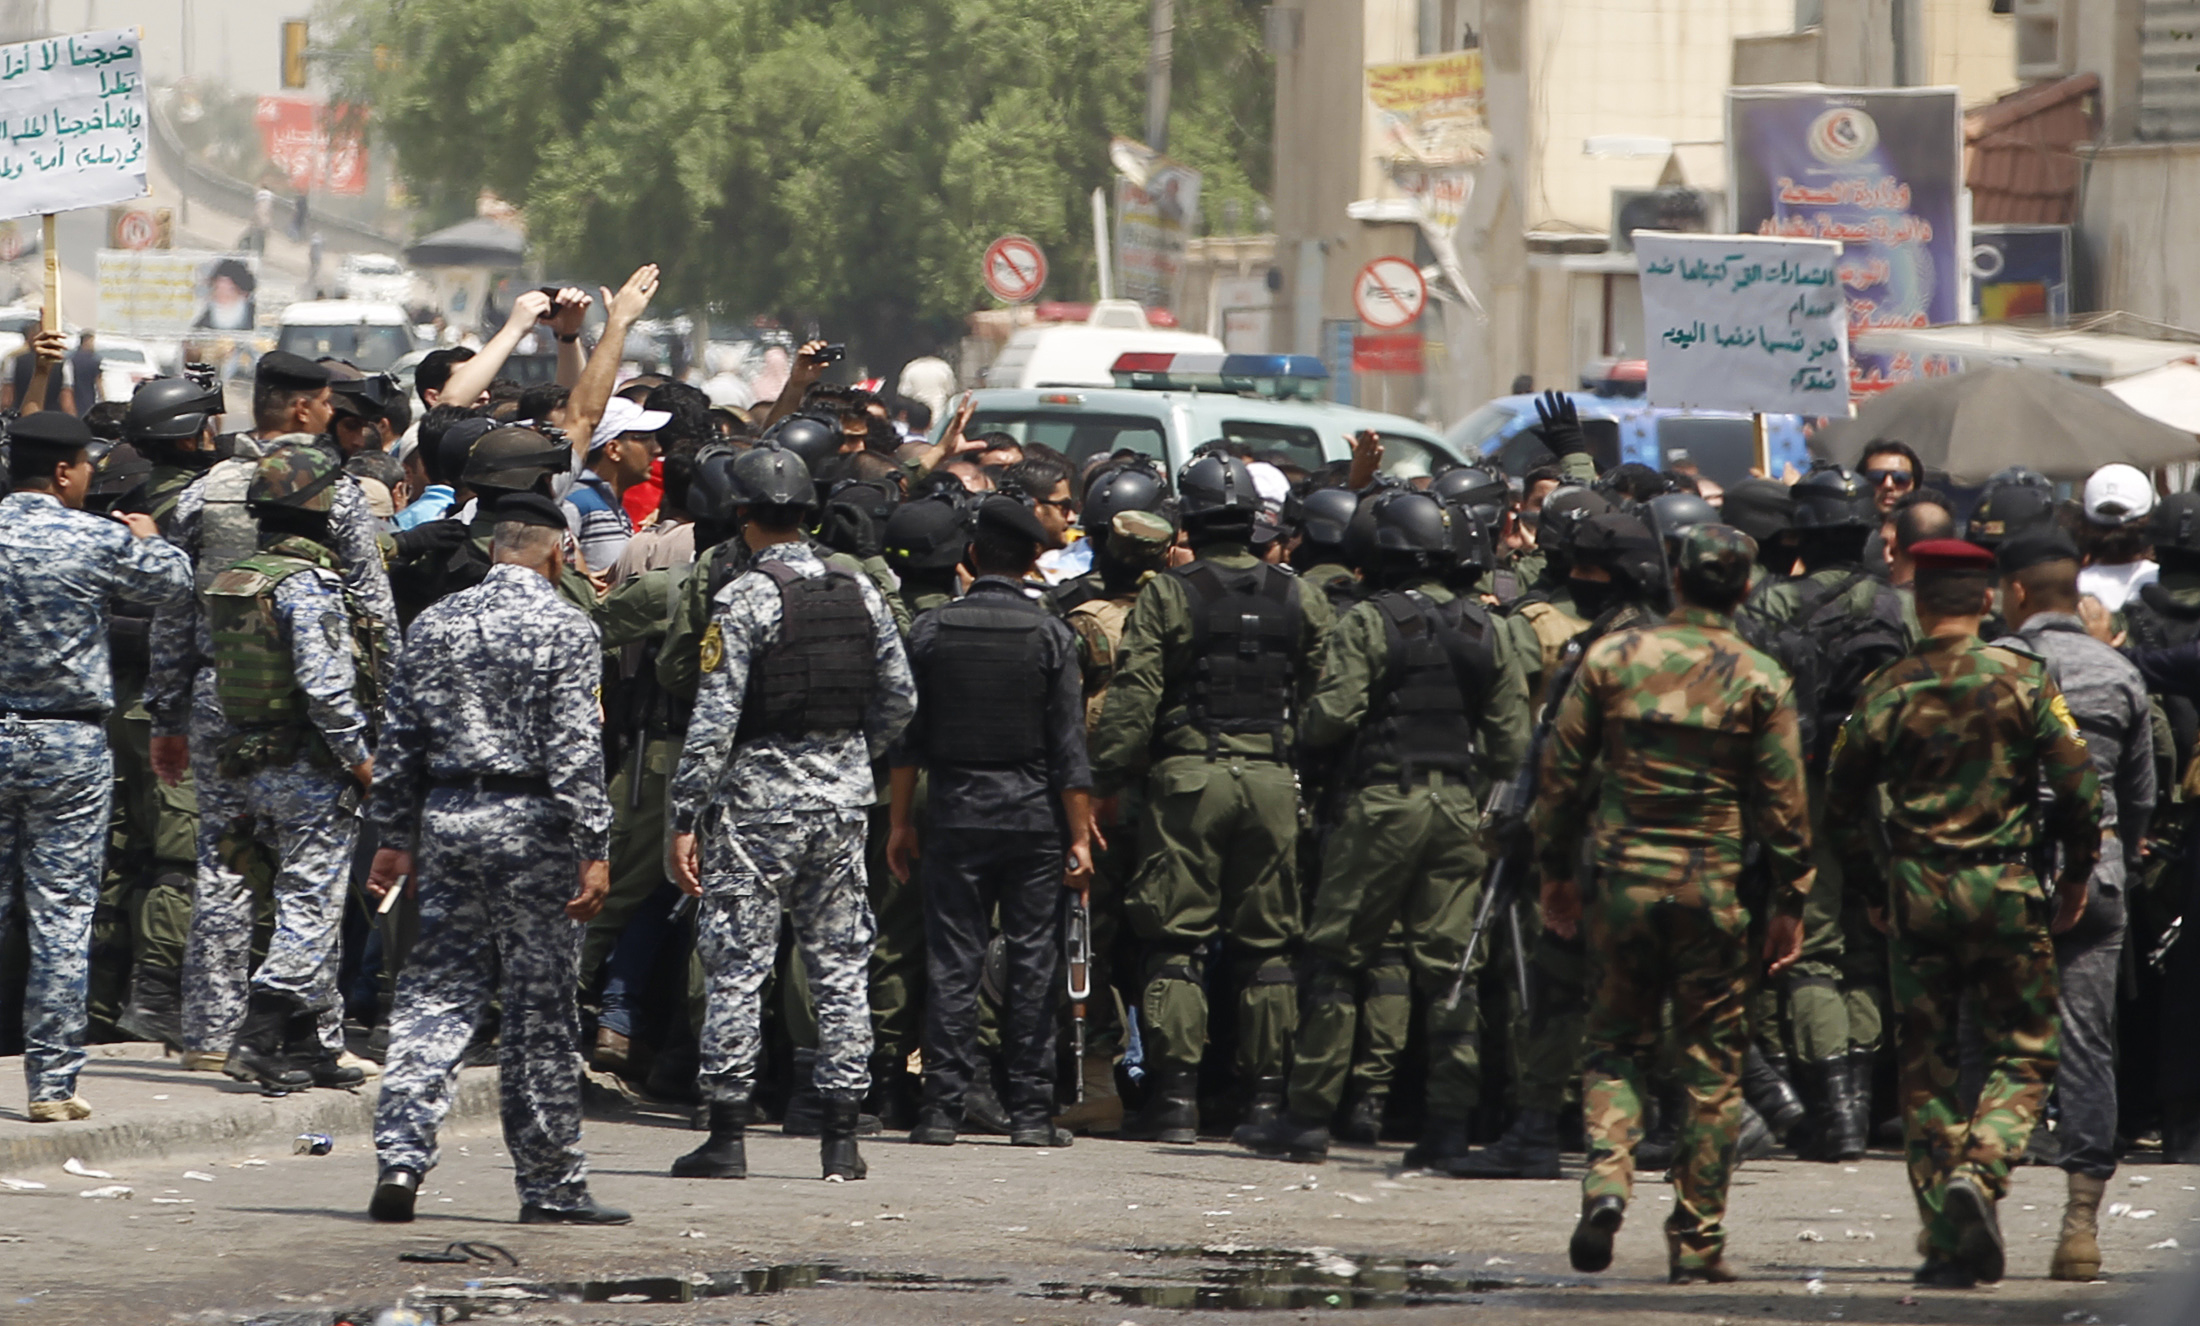 أفراد قوات الأمن العراقية تمنع المتظاهرين من المرور عبر طريق مغلق يؤدي إلى ميدان التحرير خلال المظاهرة في بغداد